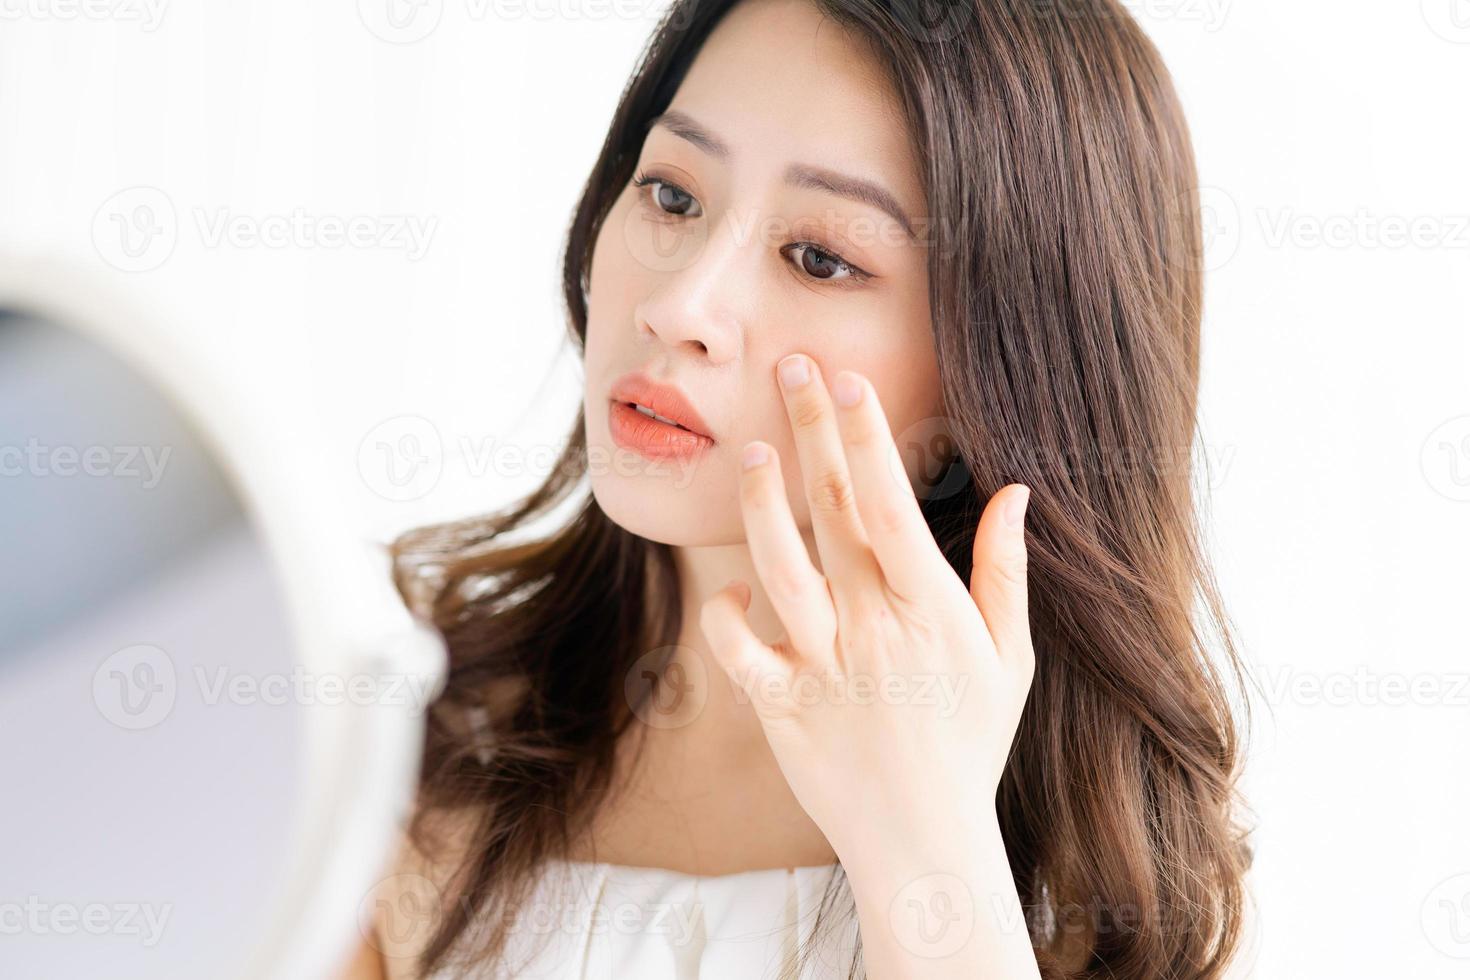 asiatische Frau sitzt Make-up vor Spiegel foto